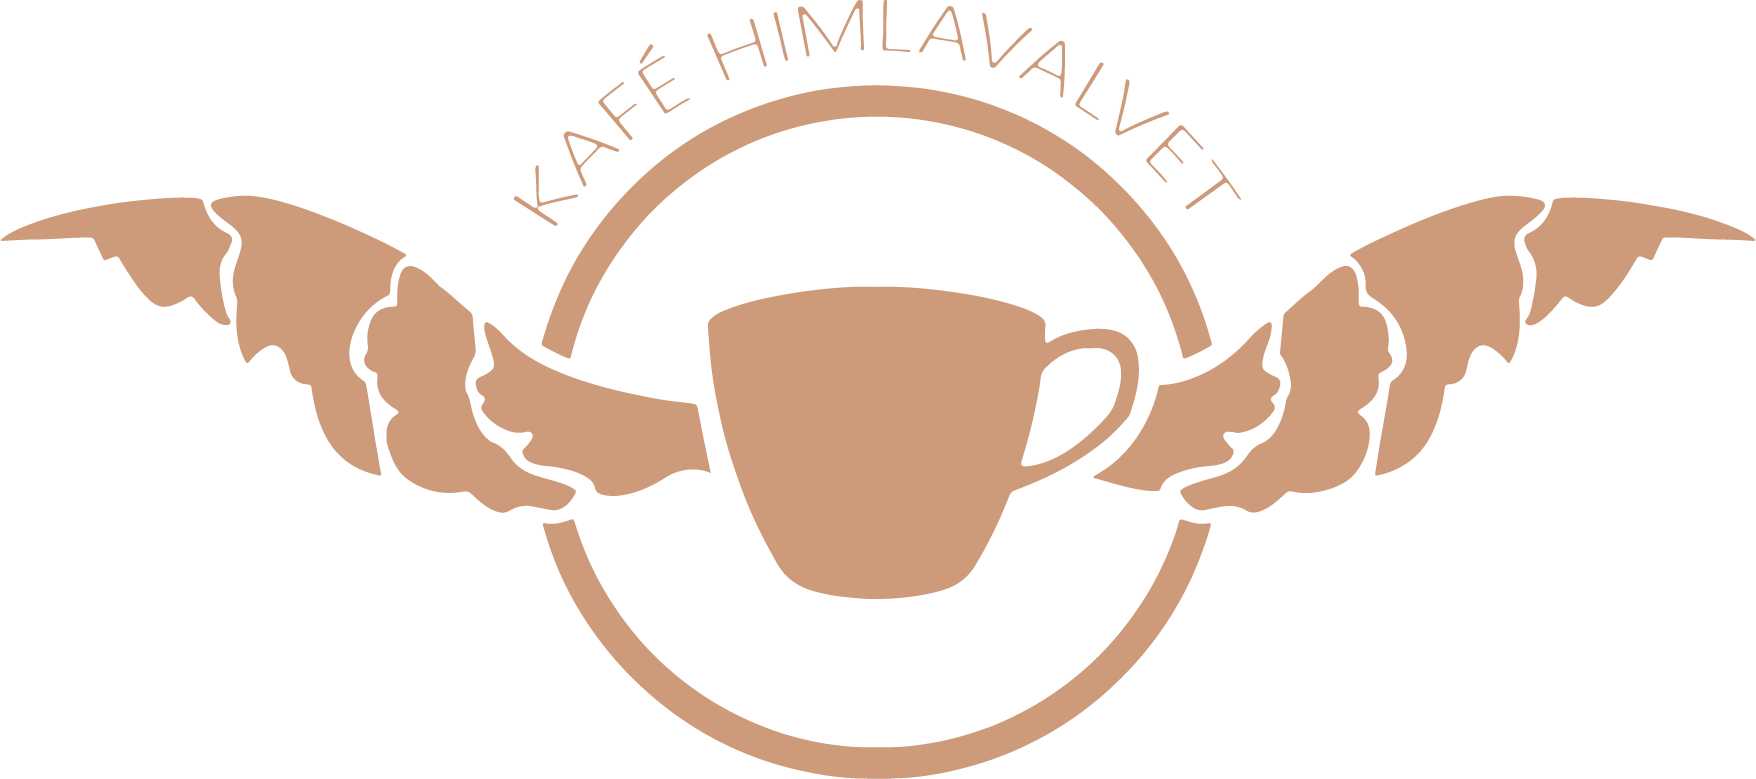 En avdelare med beige linjer och Himlavalvets logotyp.